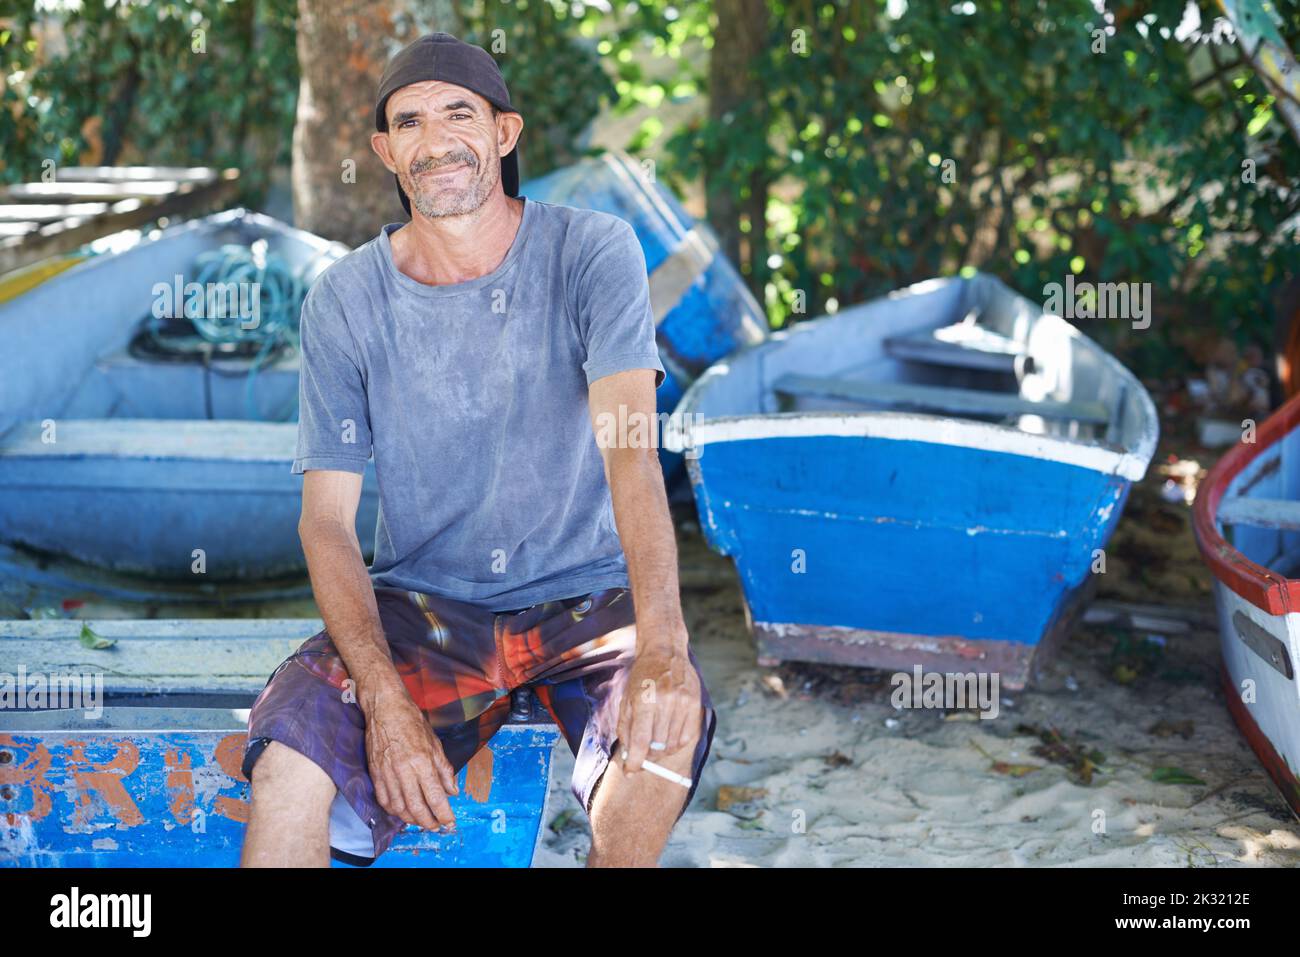 La pesca è la mia vita. Ritratto di un pescatore dall'aspetto aspro seduto su una barca da pesca. Foto Stock